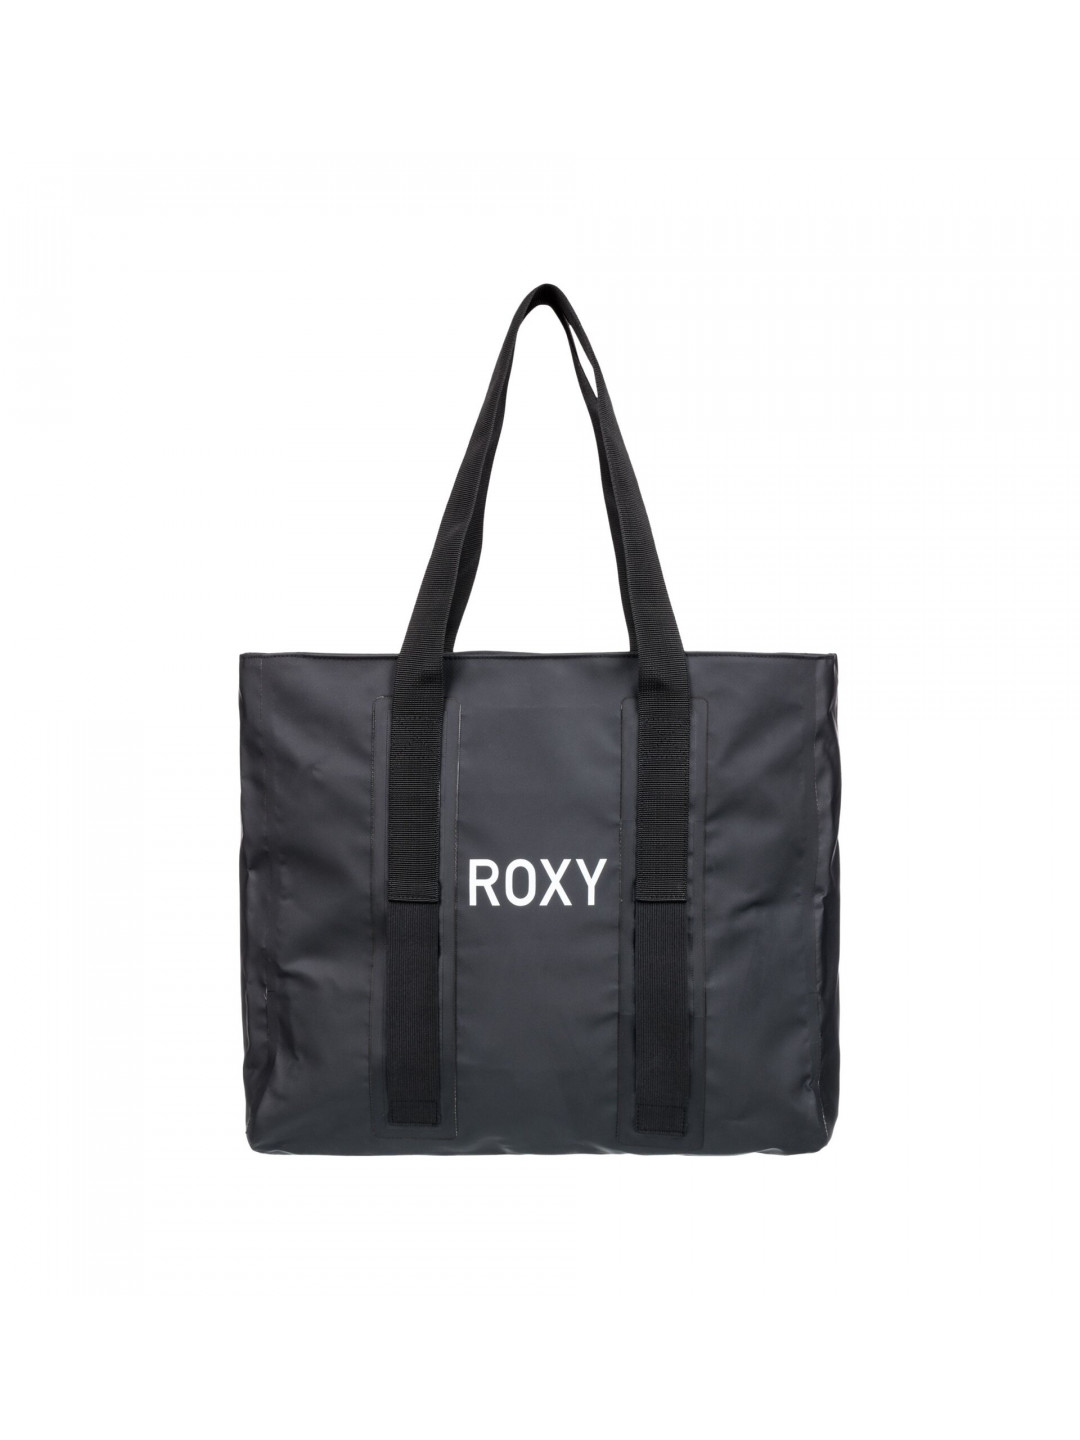 Roxy taška Lavender Mist Anthracite Černá Objem 29 L